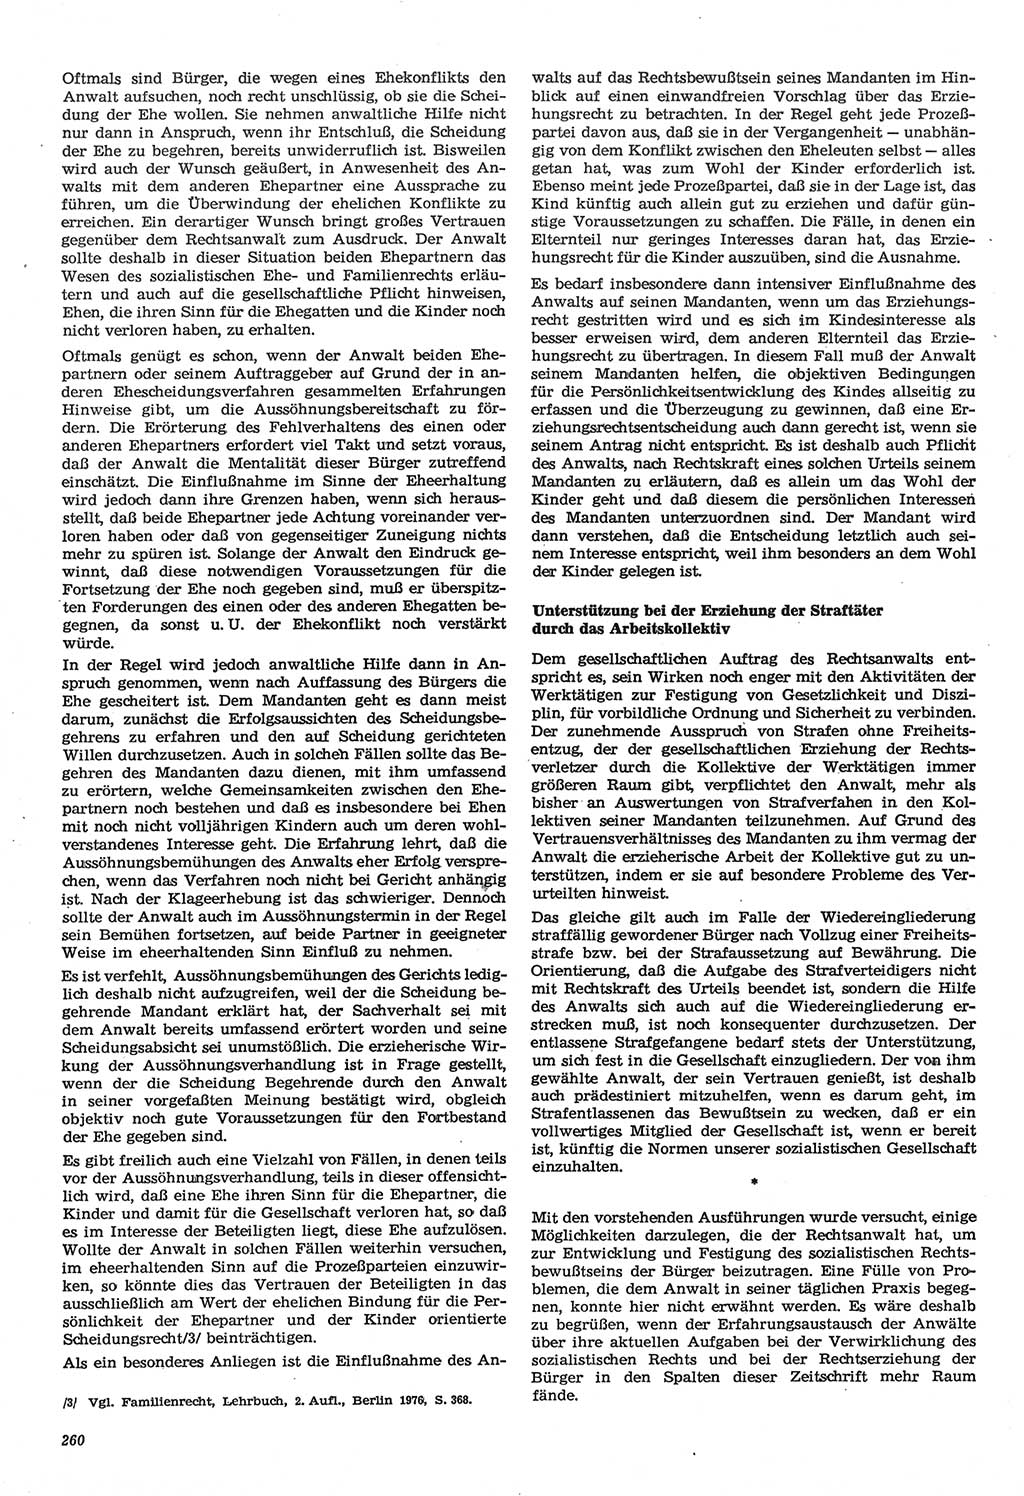 Neue Justiz (NJ), Zeitschrift für Recht und Rechtswissenschaft-Zeitschrift, sozialistisches Recht und Gesetzlichkeit, 31. Jahrgang 1977, Seite 260 (NJ DDR 1977, S. 260)